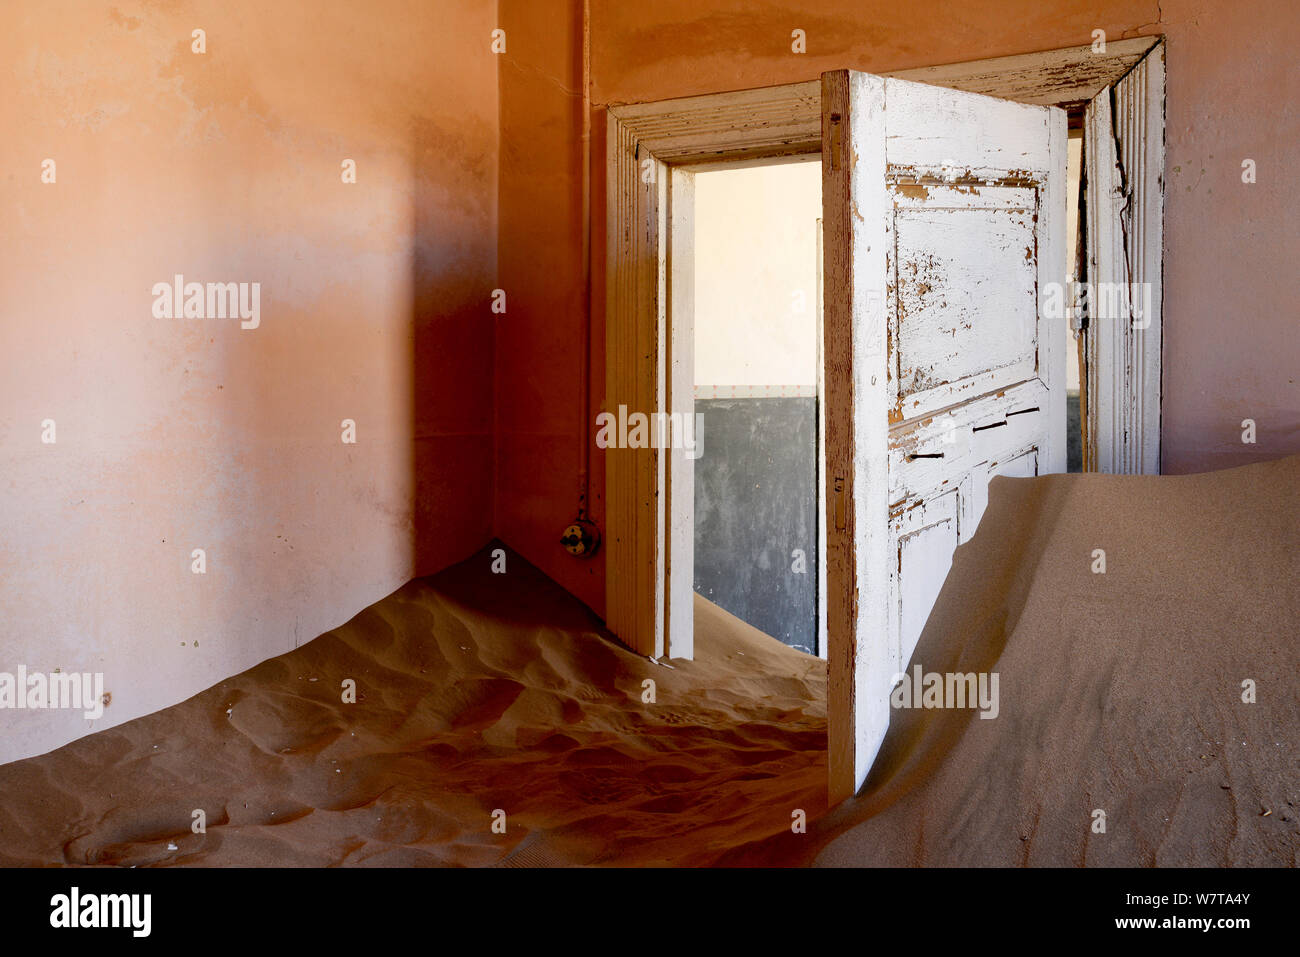 Casa abbandonata piena di sabbia. Kolmanskop città fantasma, un vecchio diamond-città mineraria dove dune di sabbia in movimento hanno invaso le case abbandonate, Namib Desert Namibia, ottobre 2013. Foto Stock